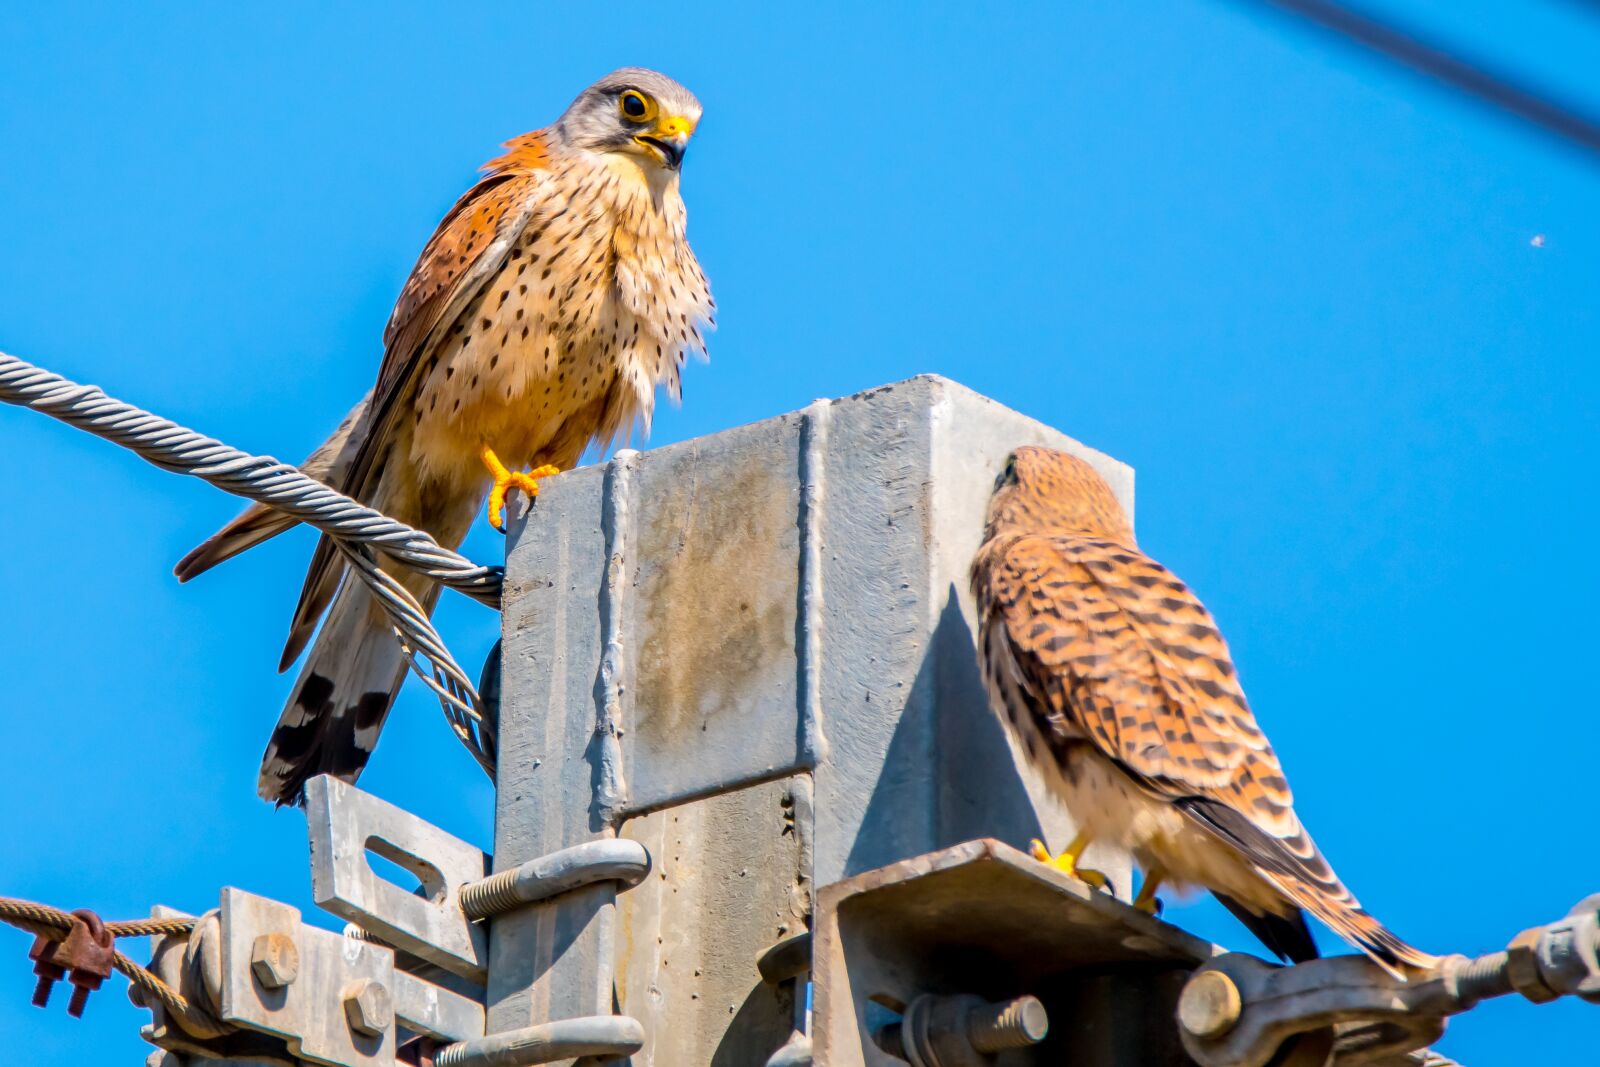 Nikon D7500 sample photo. Bird of prey, falcon photography